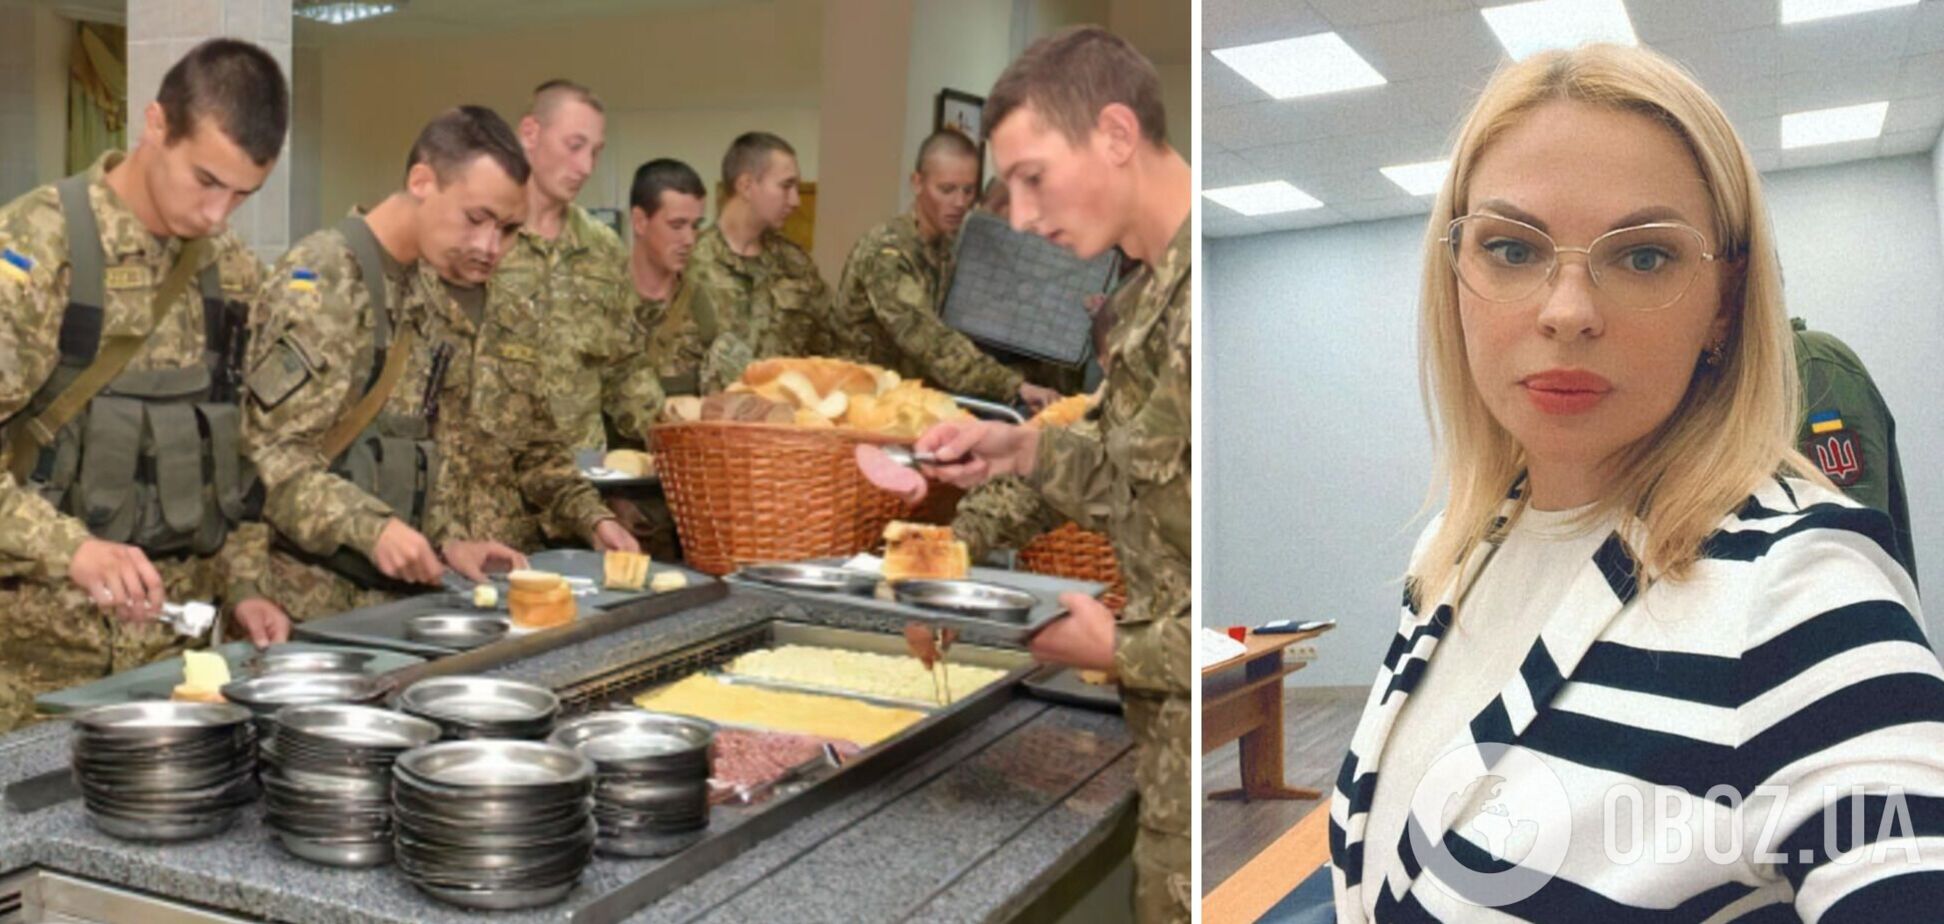 Закупка питания для украинских военных теперь будет без коррупционных злоупотреблений, – волонтер Яровая